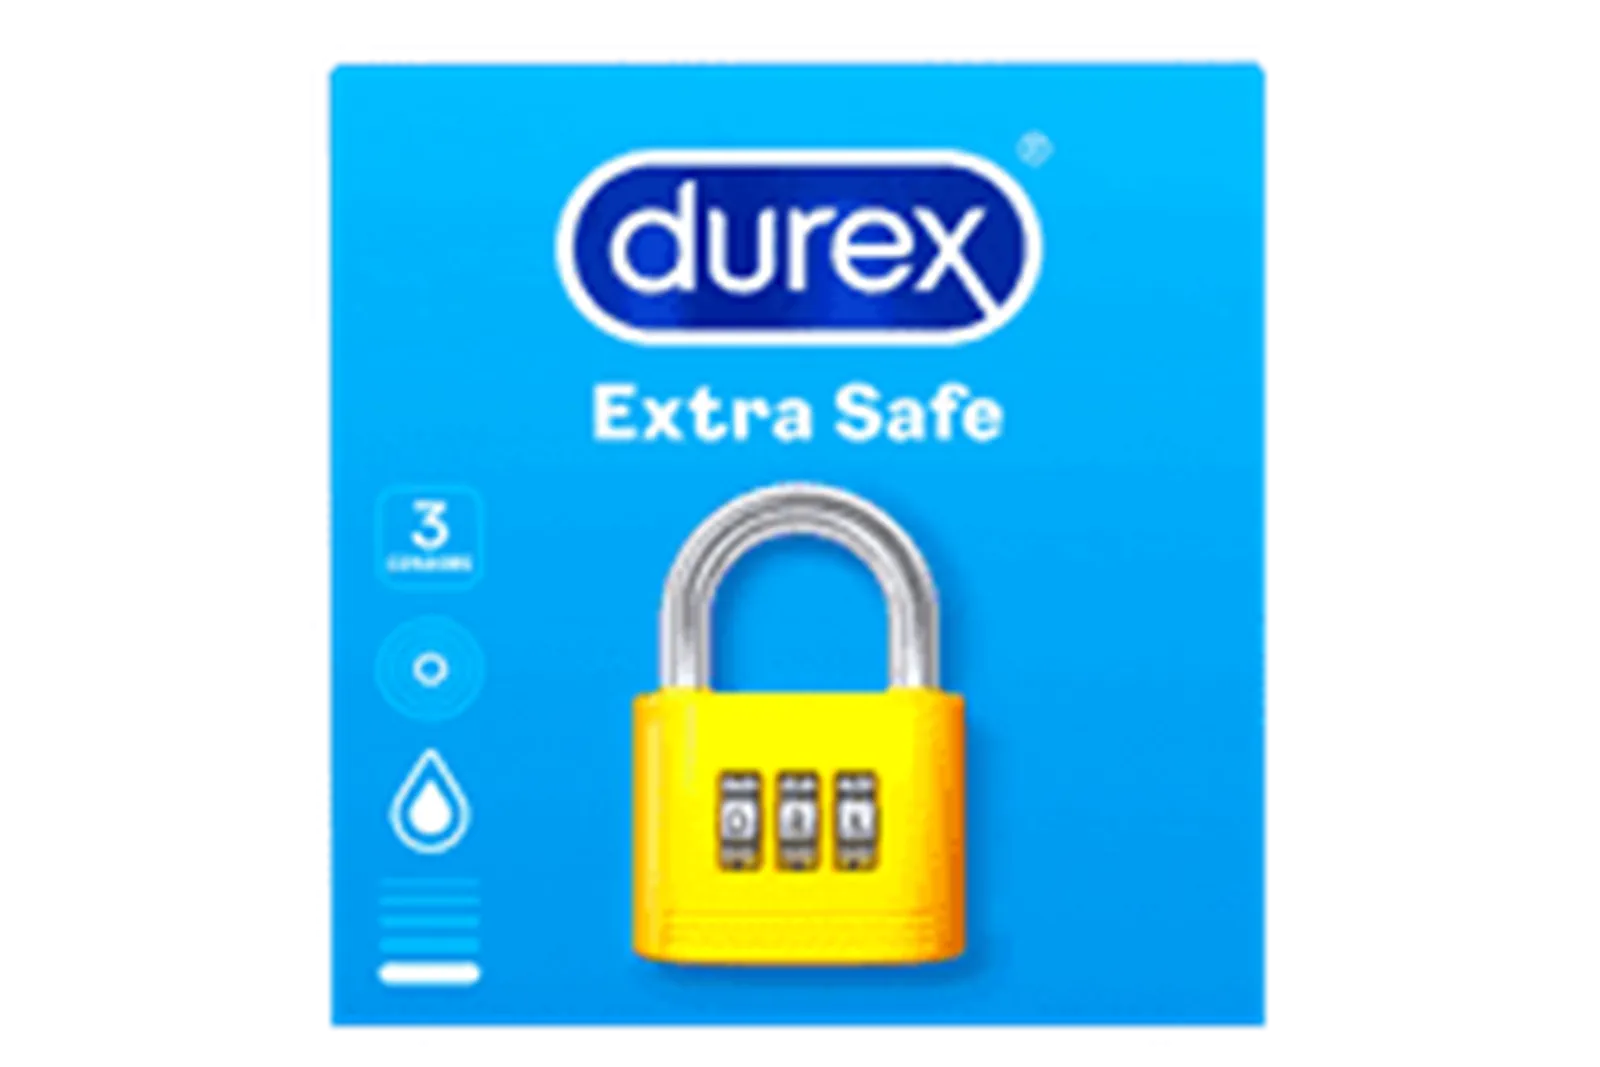 8 Jenis Kondom Durex Beserta Harga dan Perbedaannya